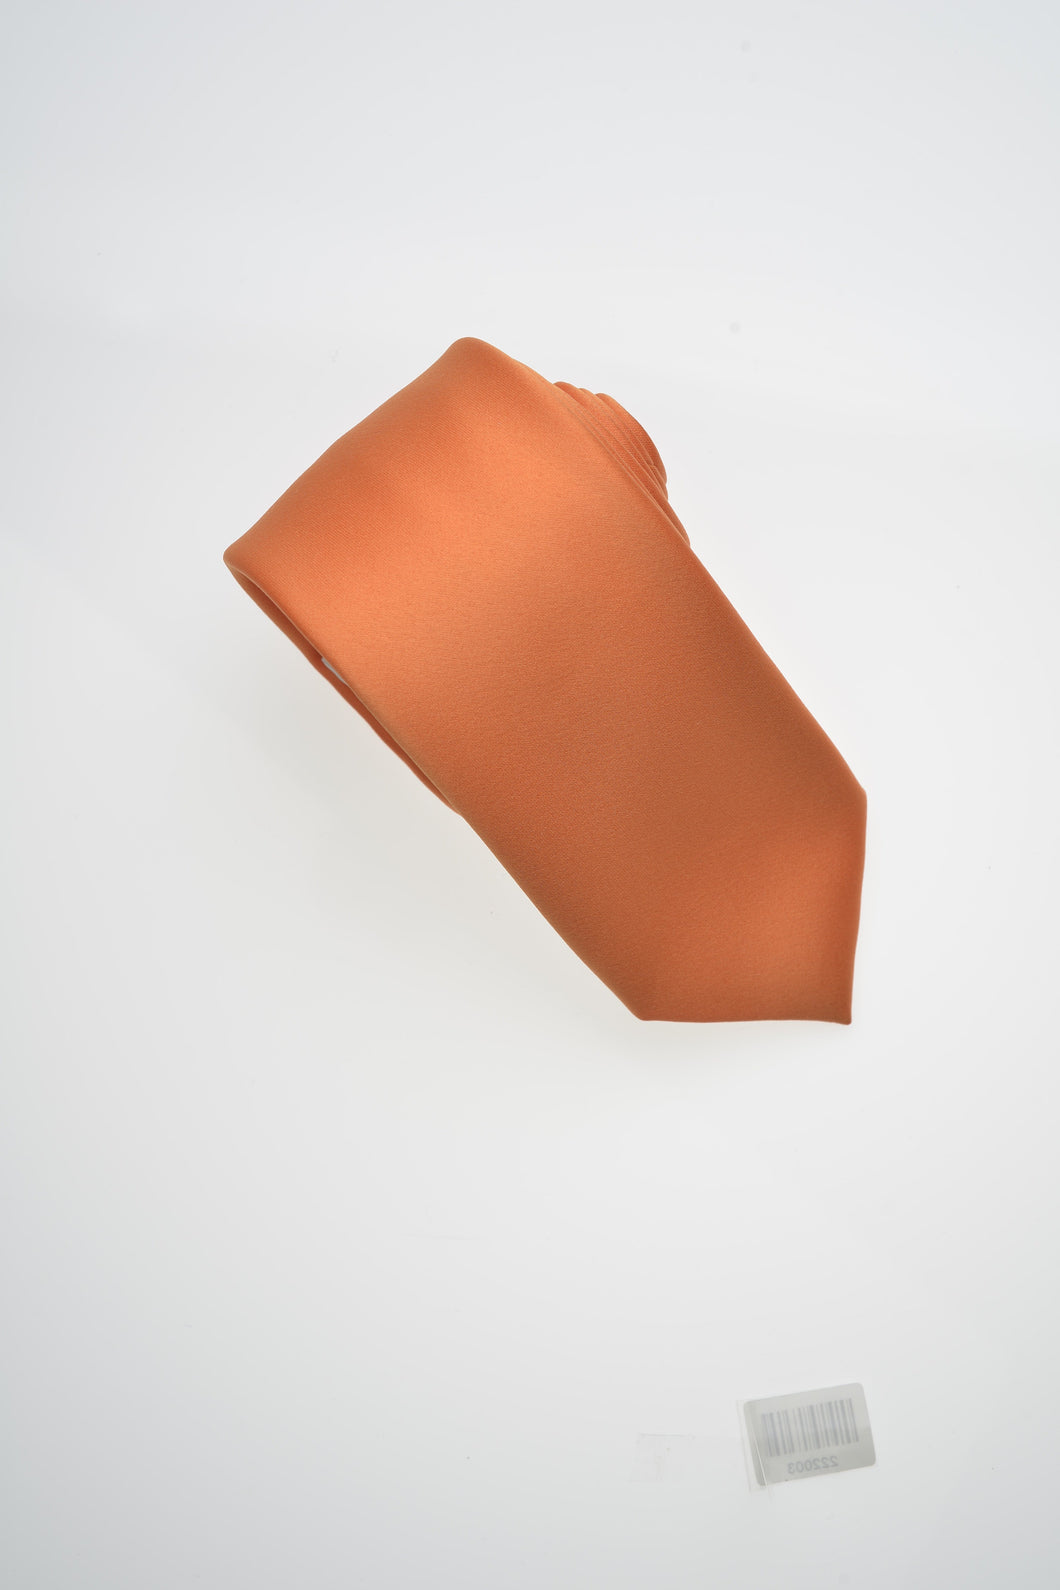 Basket Ball Orange Solid Modern Neckties